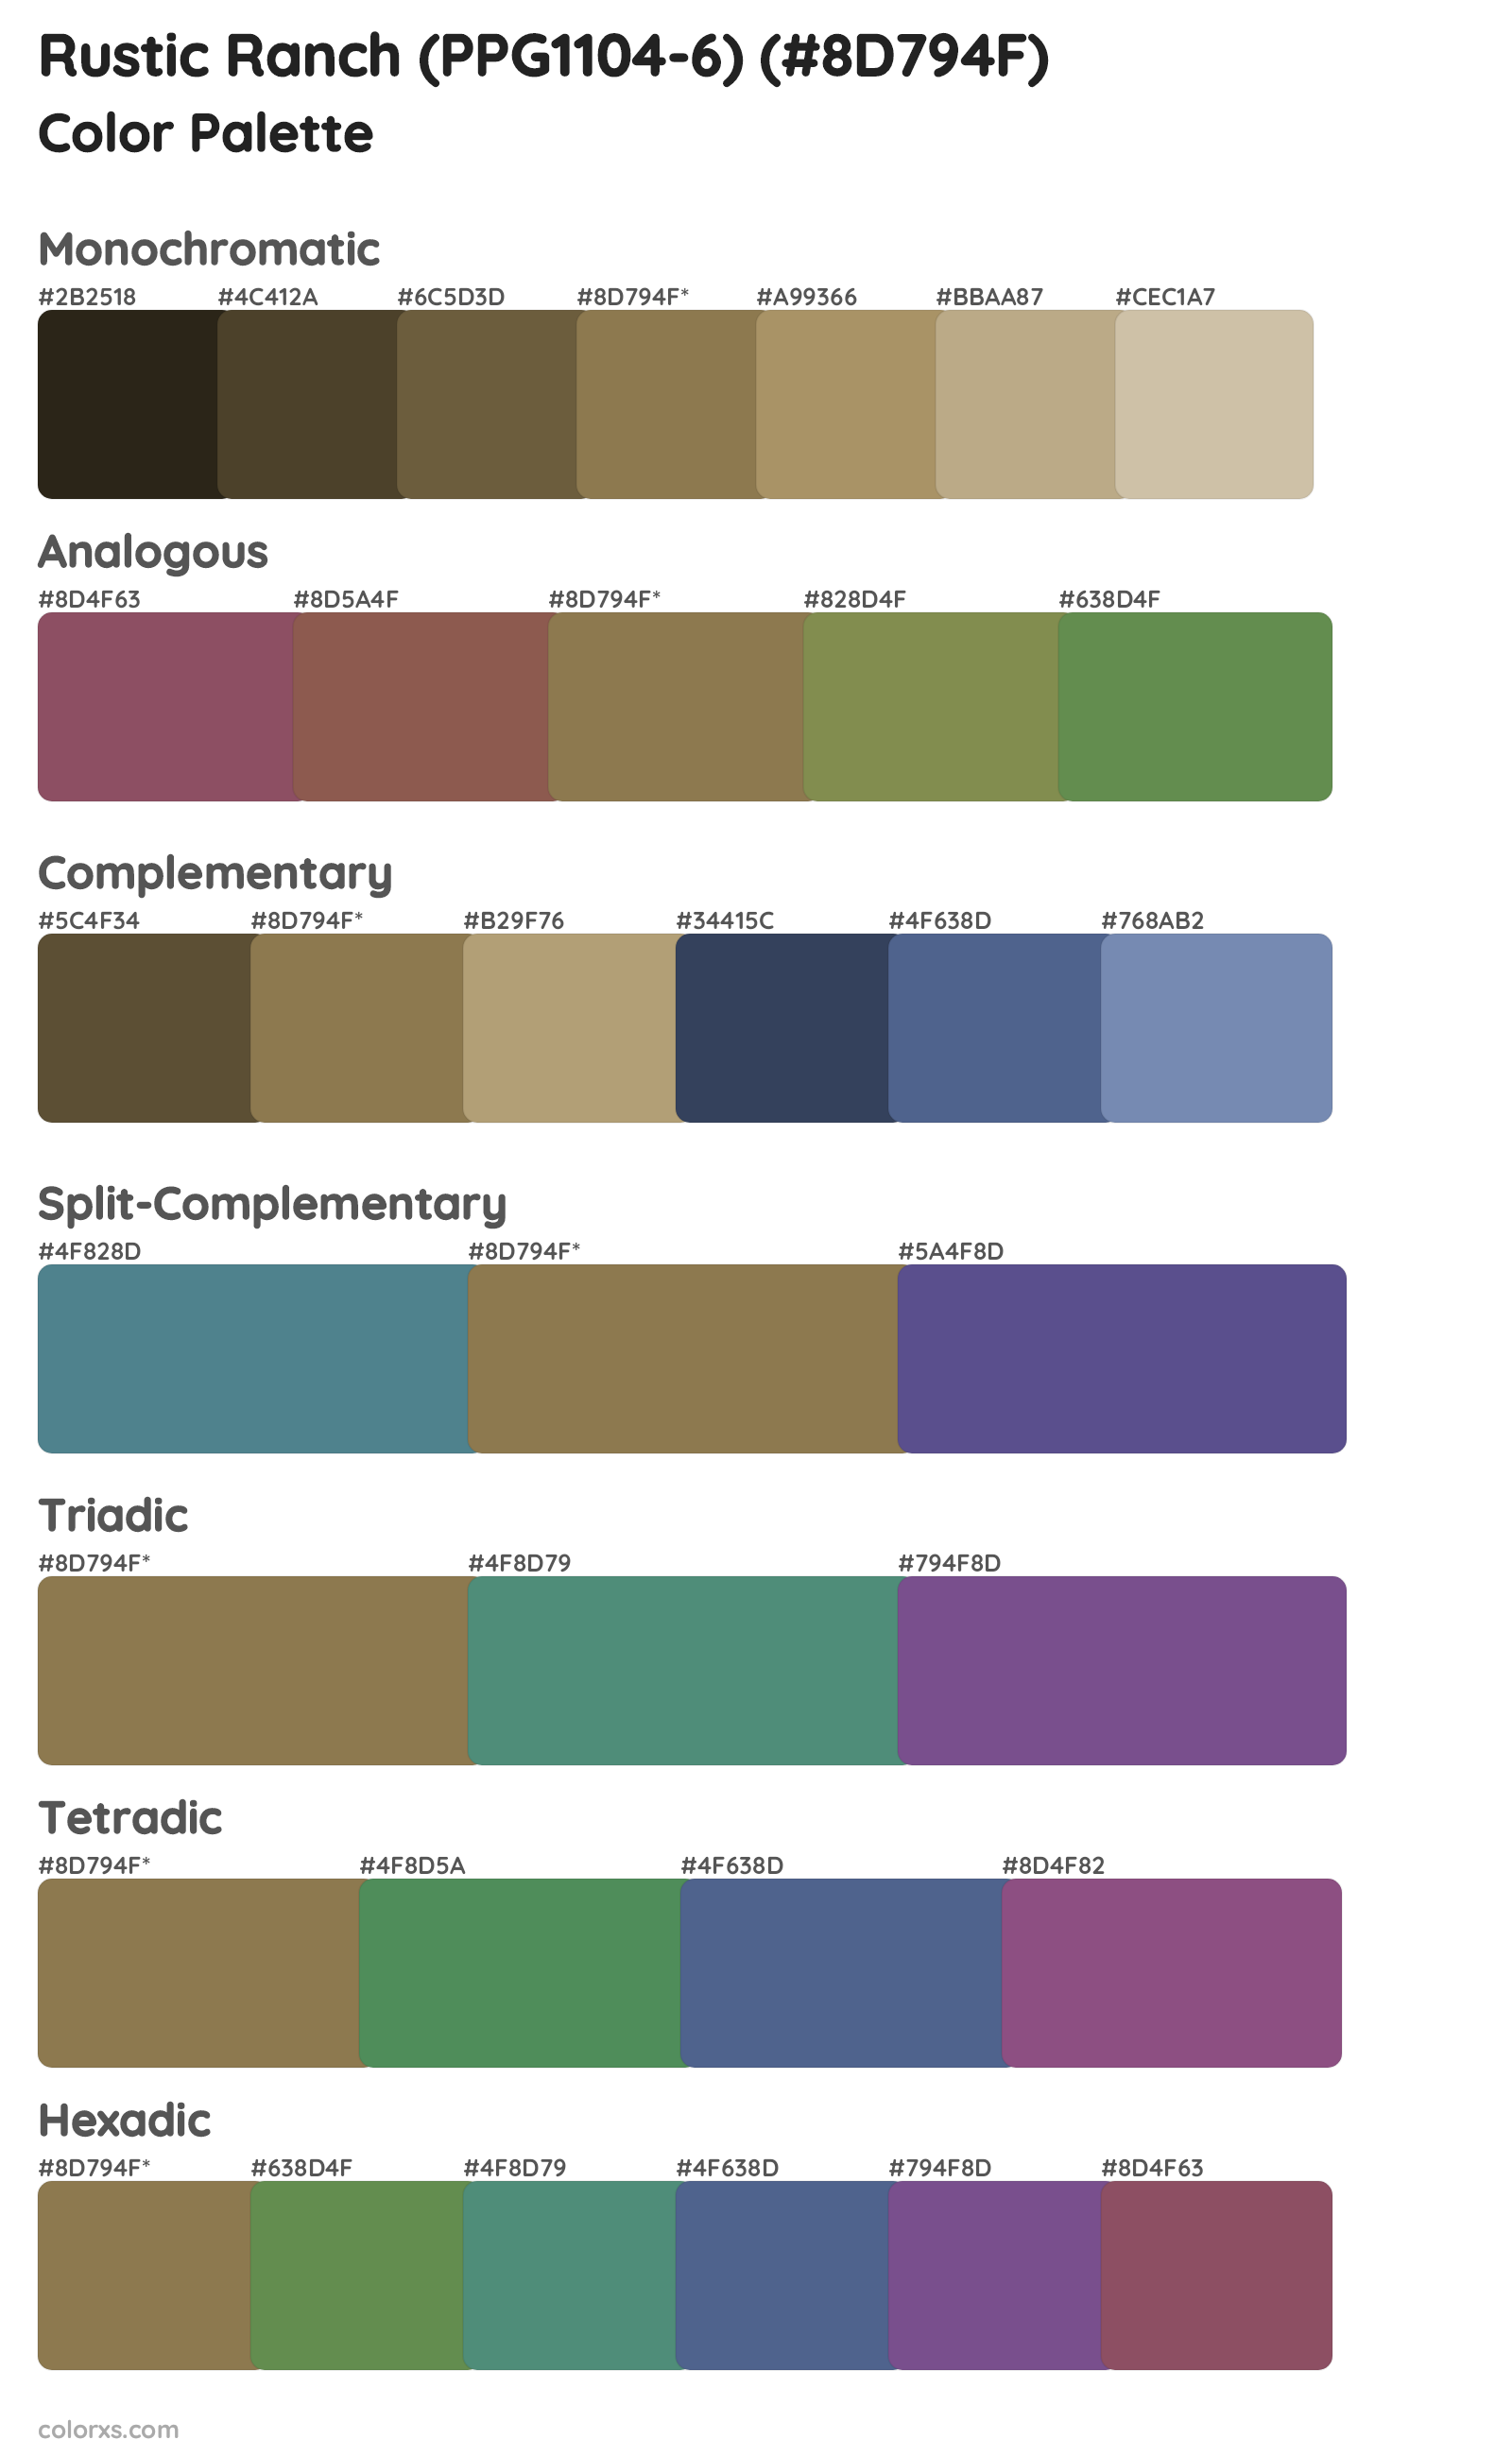 Rustic Ranch (PPG1104-6) Color Scheme Palettes